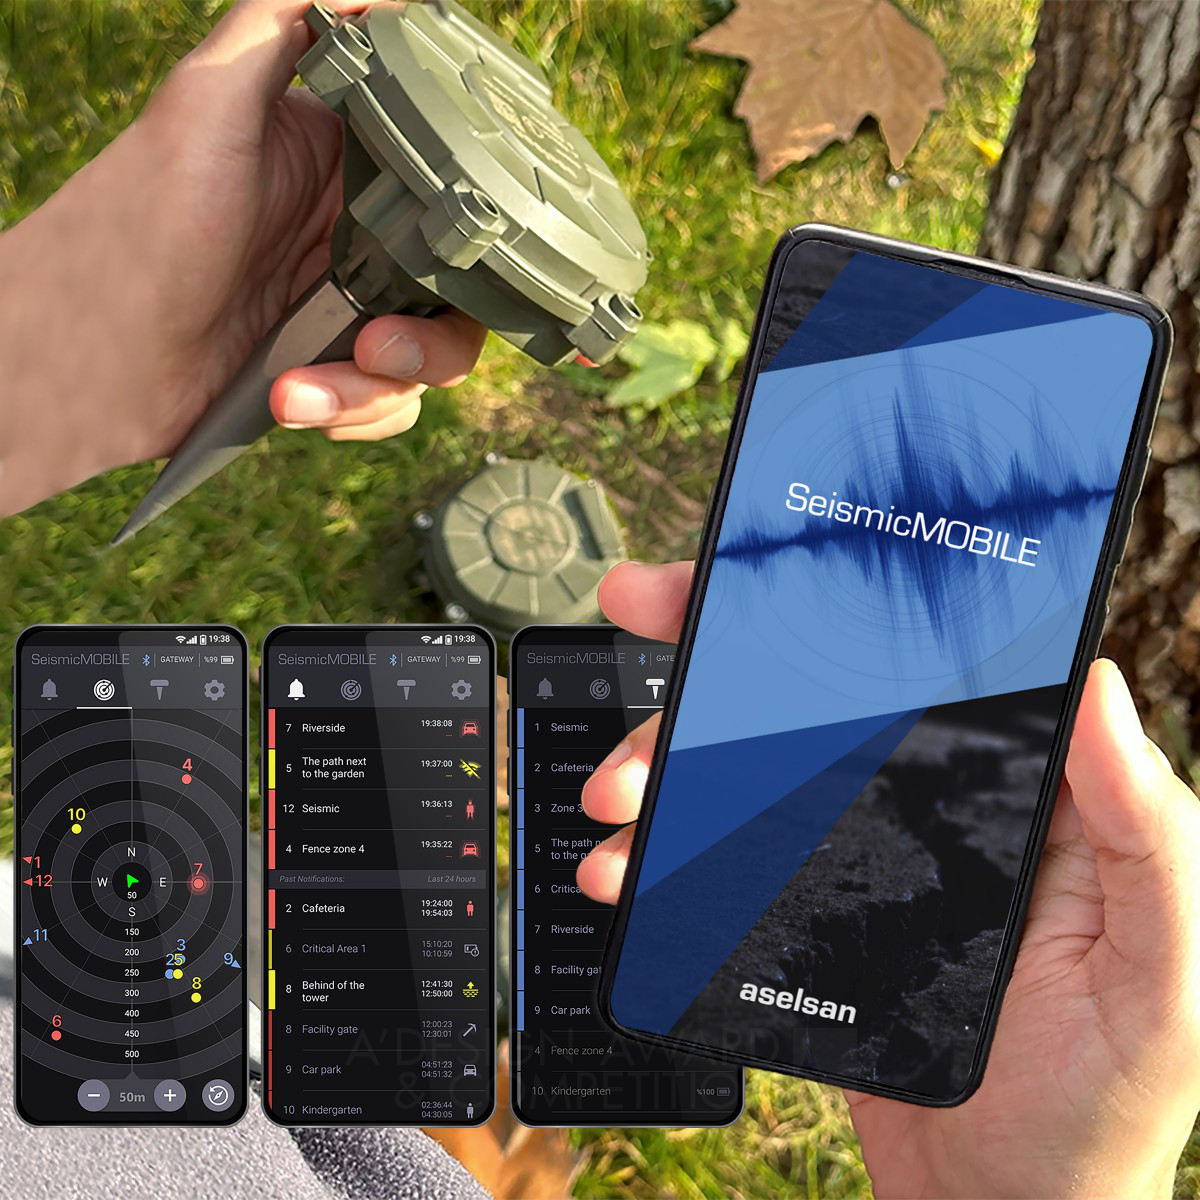 Seismic Mobile: Een Revolutionaire App voor Seismische Beveiliging